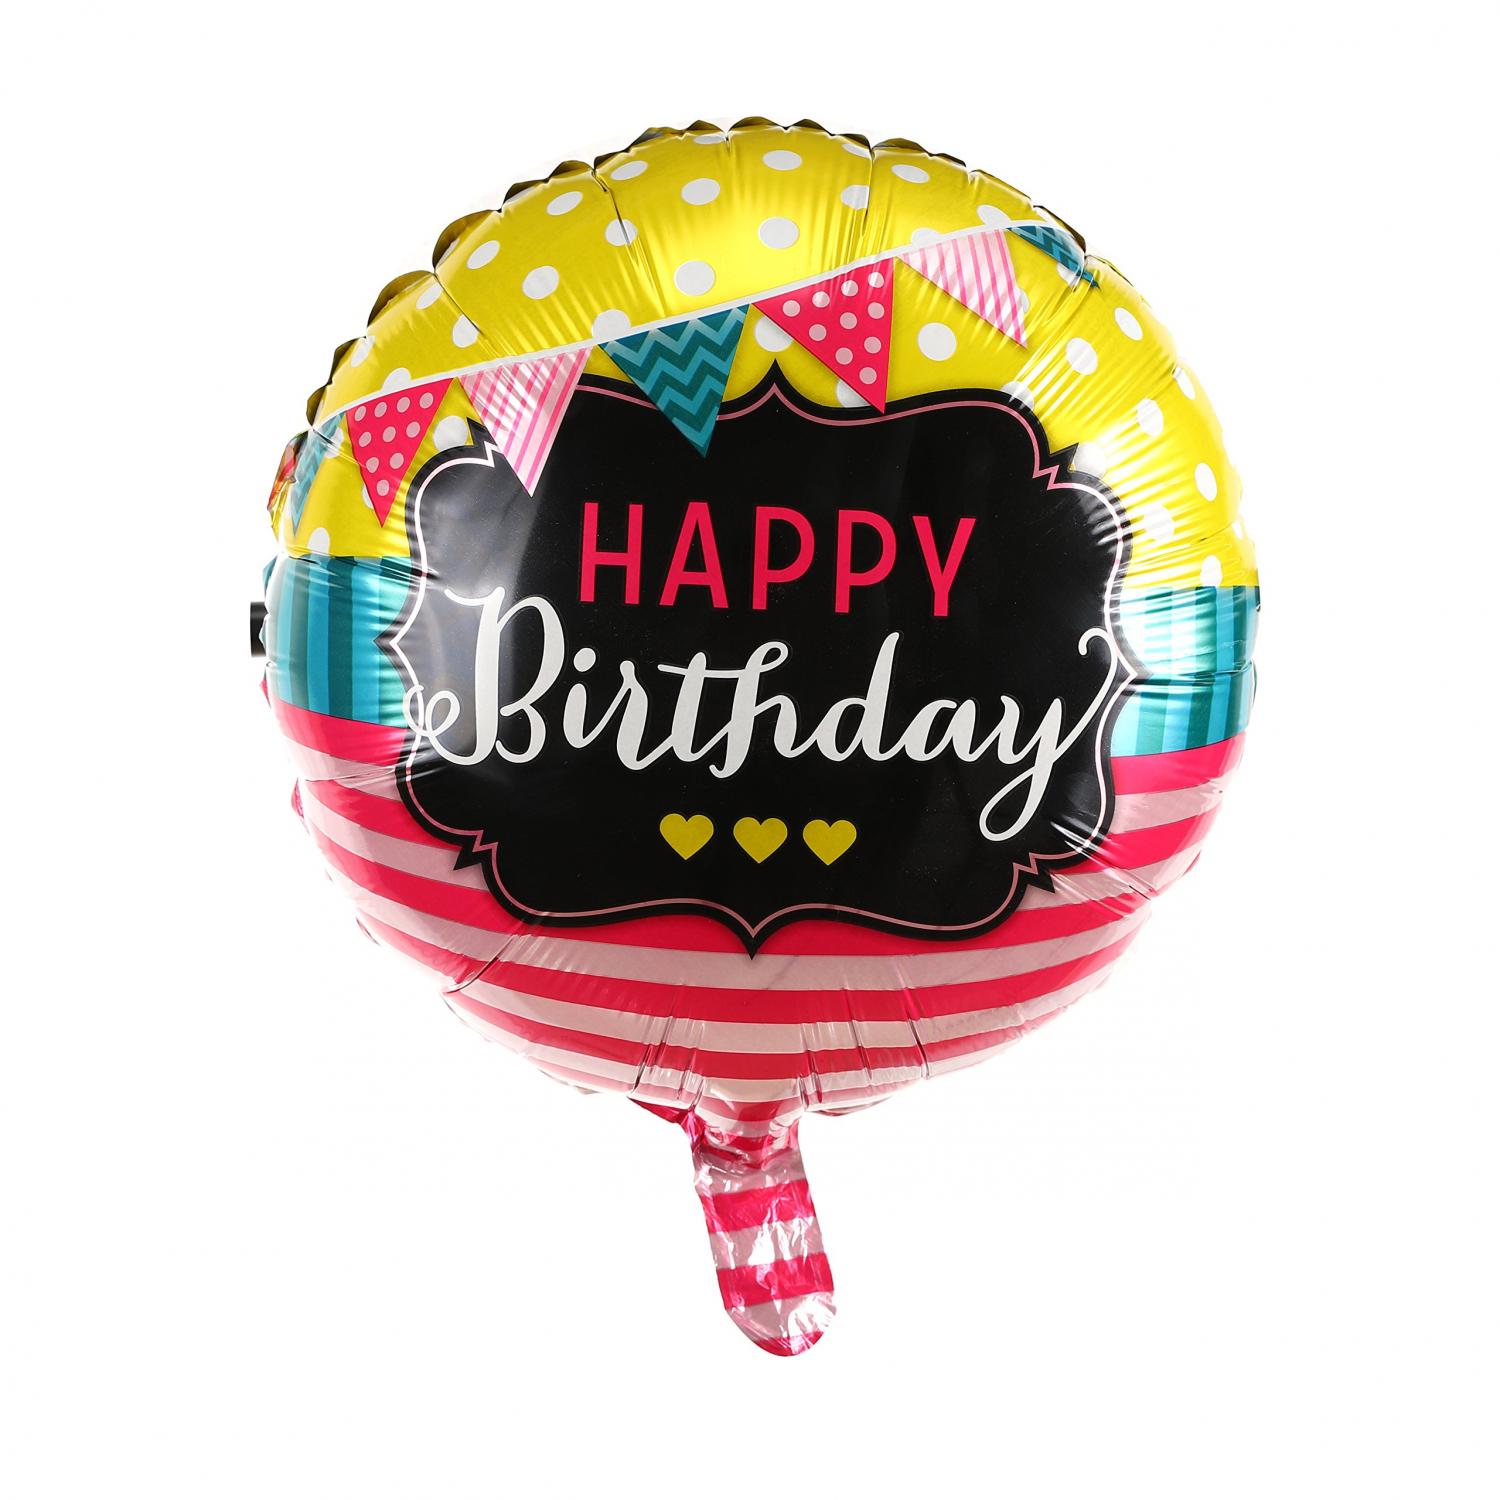 Happy Birthday vimpel födelsedags folieballong